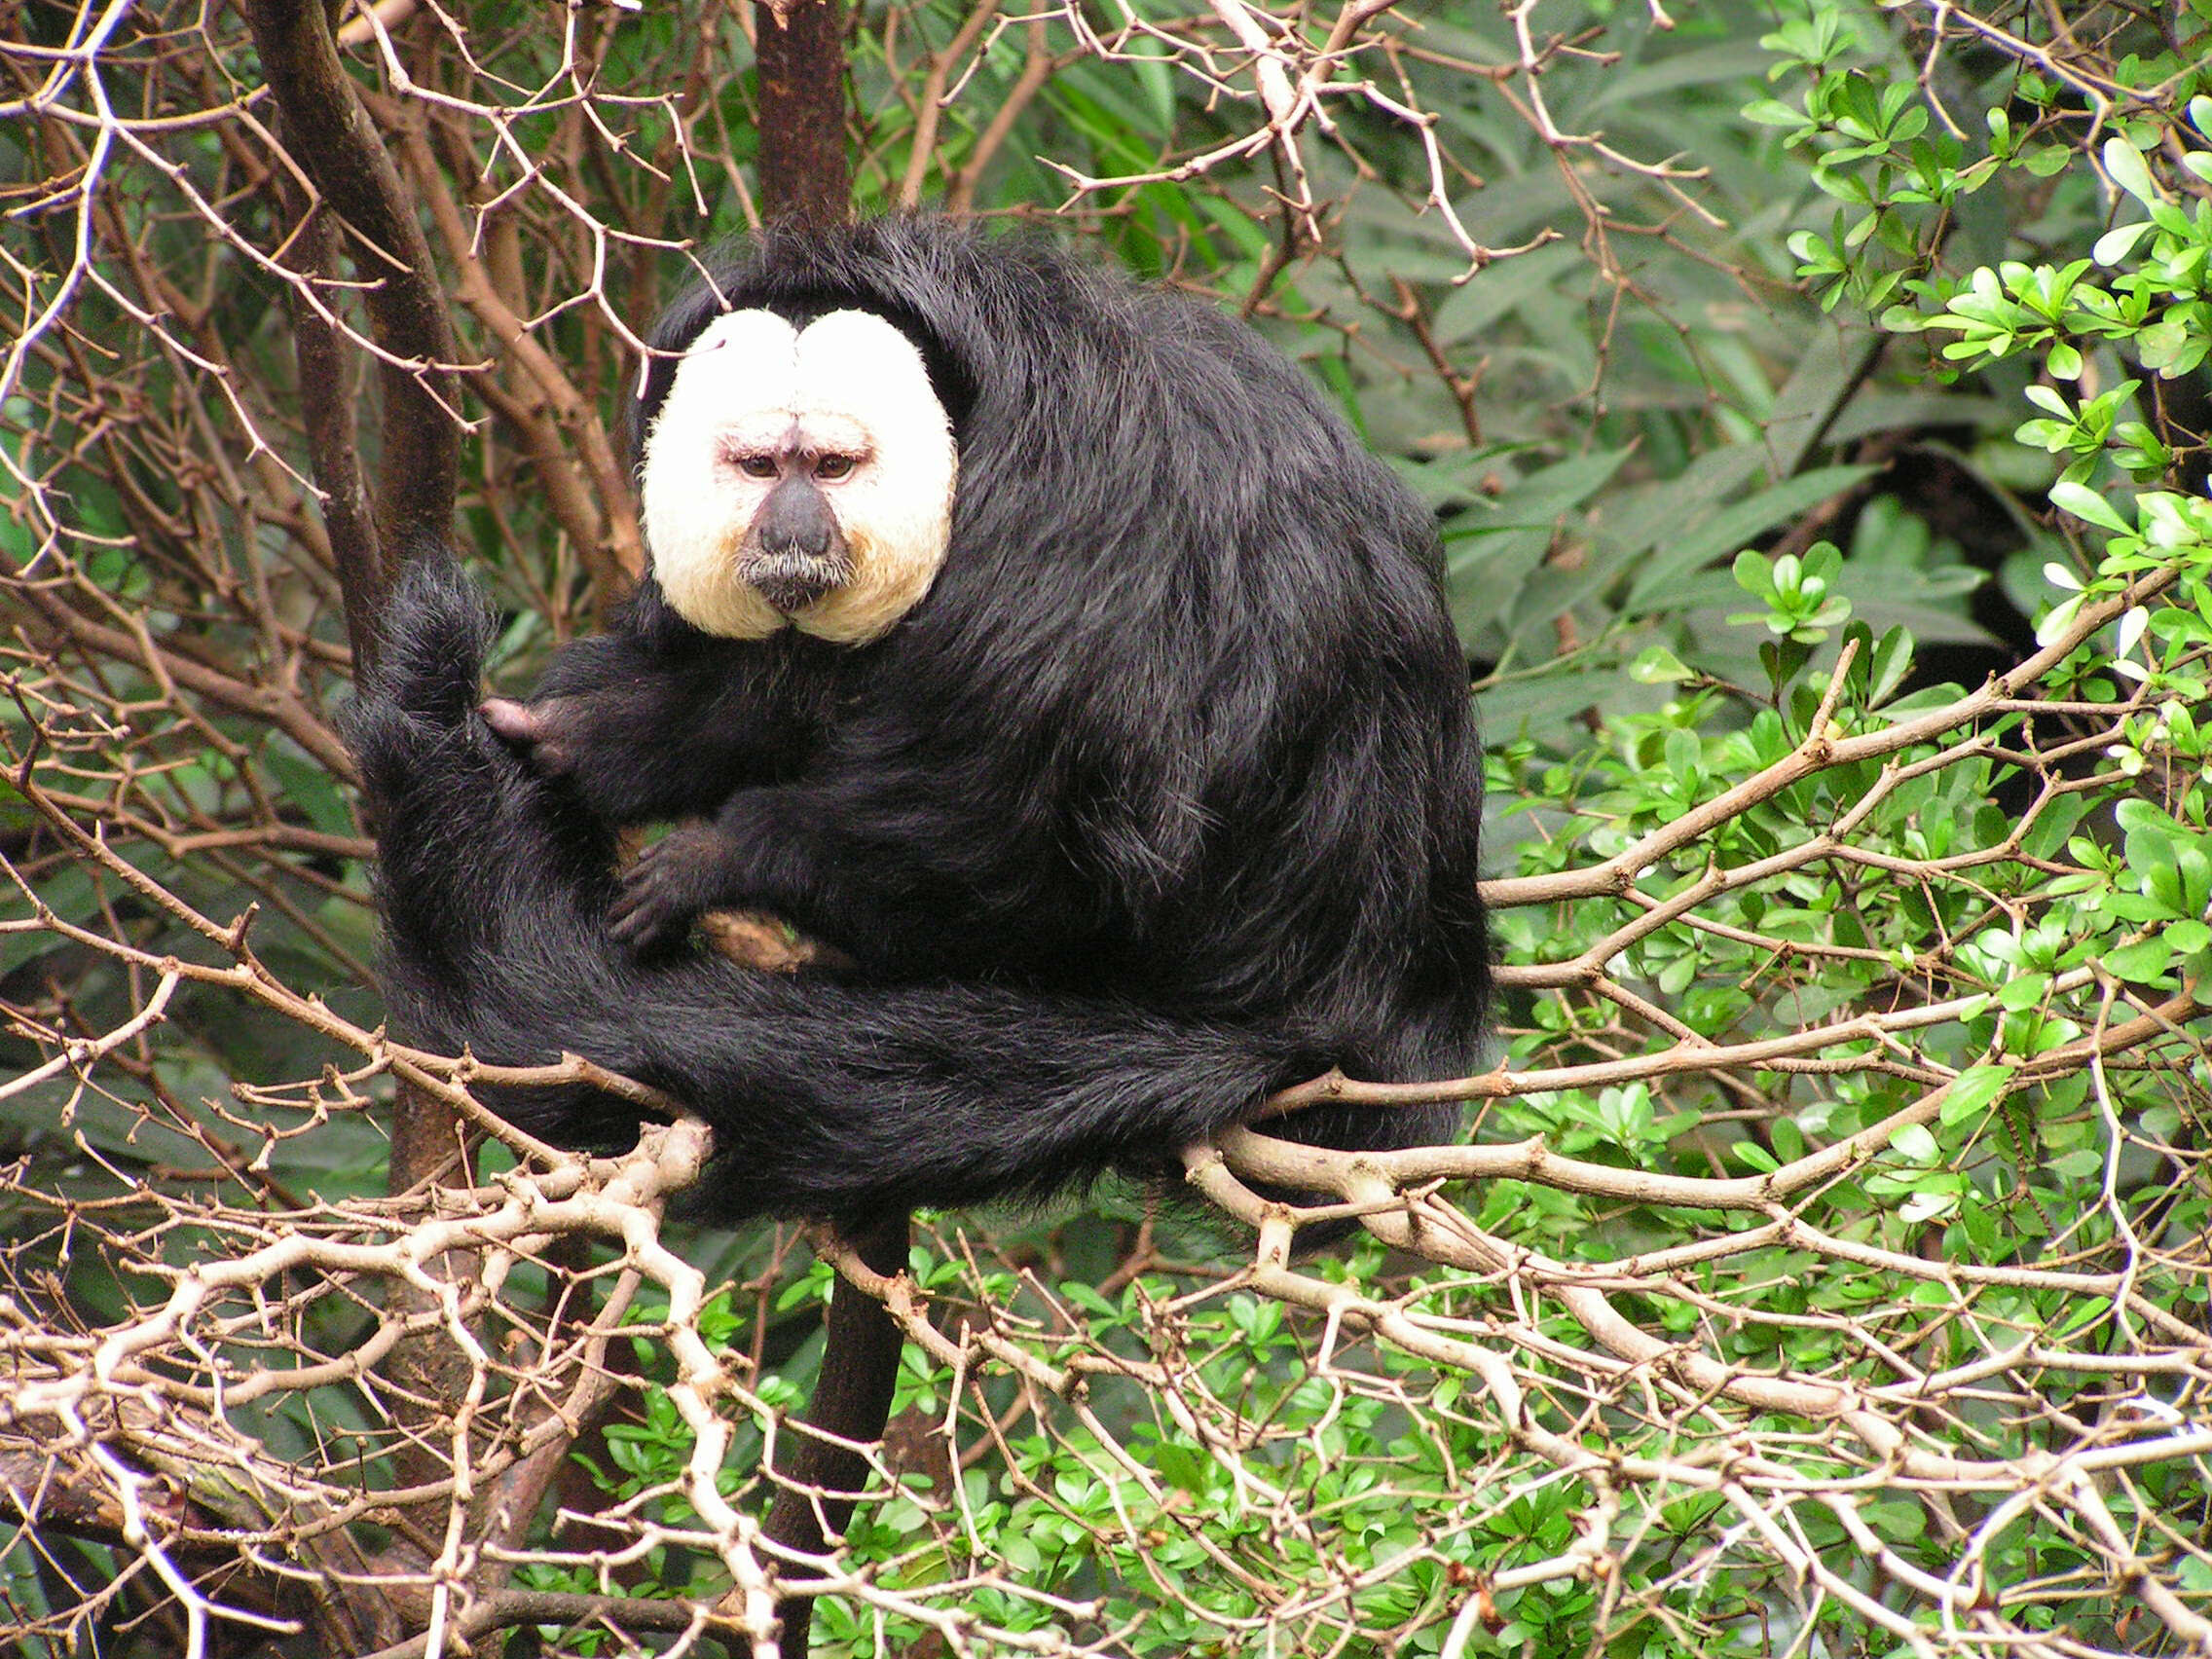 Image of pithecid monkeys